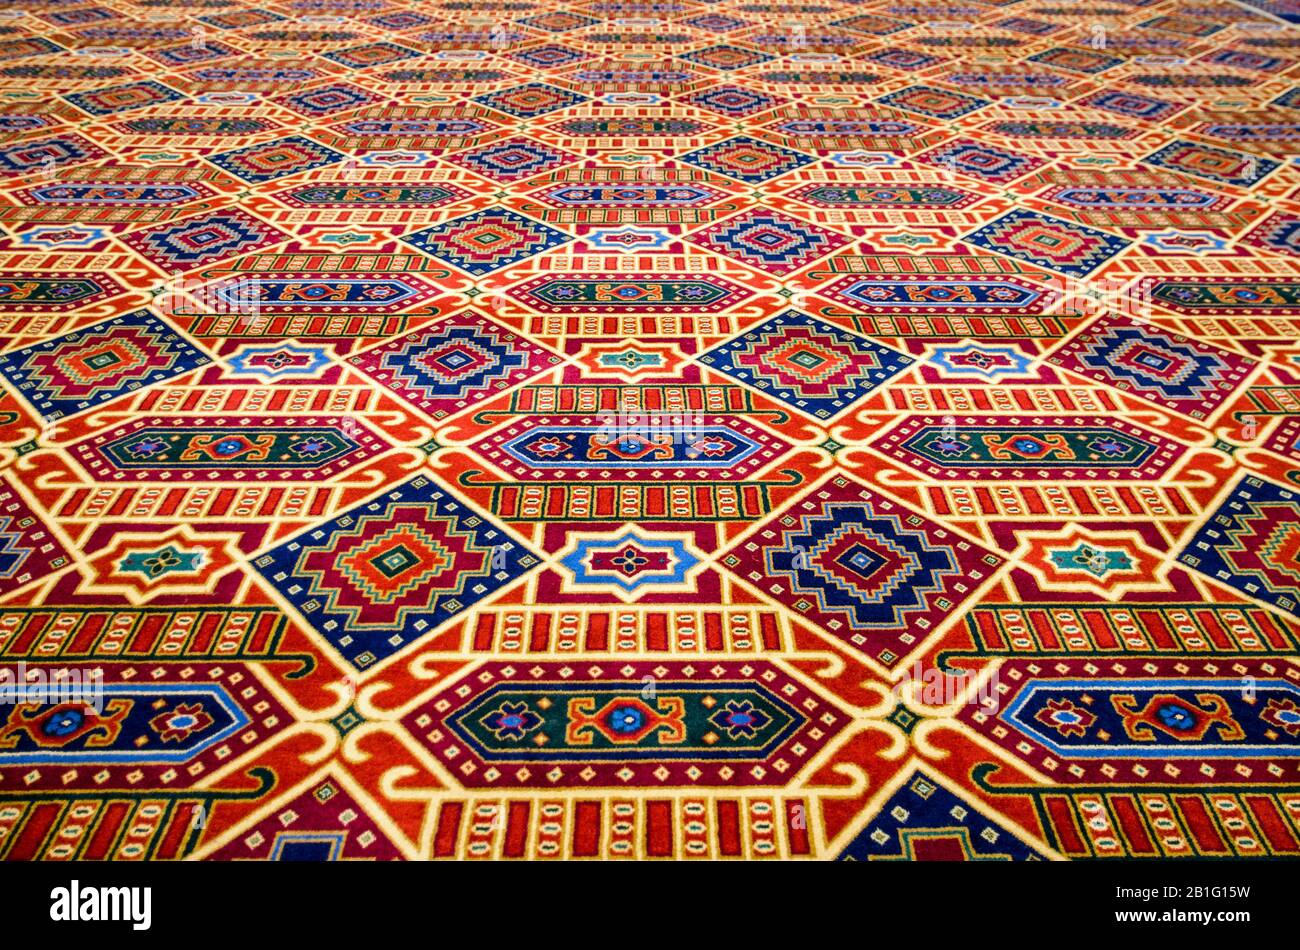 Farbenfroher, strukturierender Teppich, Fokus auf Vordergrund mit abnehmender Perspektive. Stockfoto